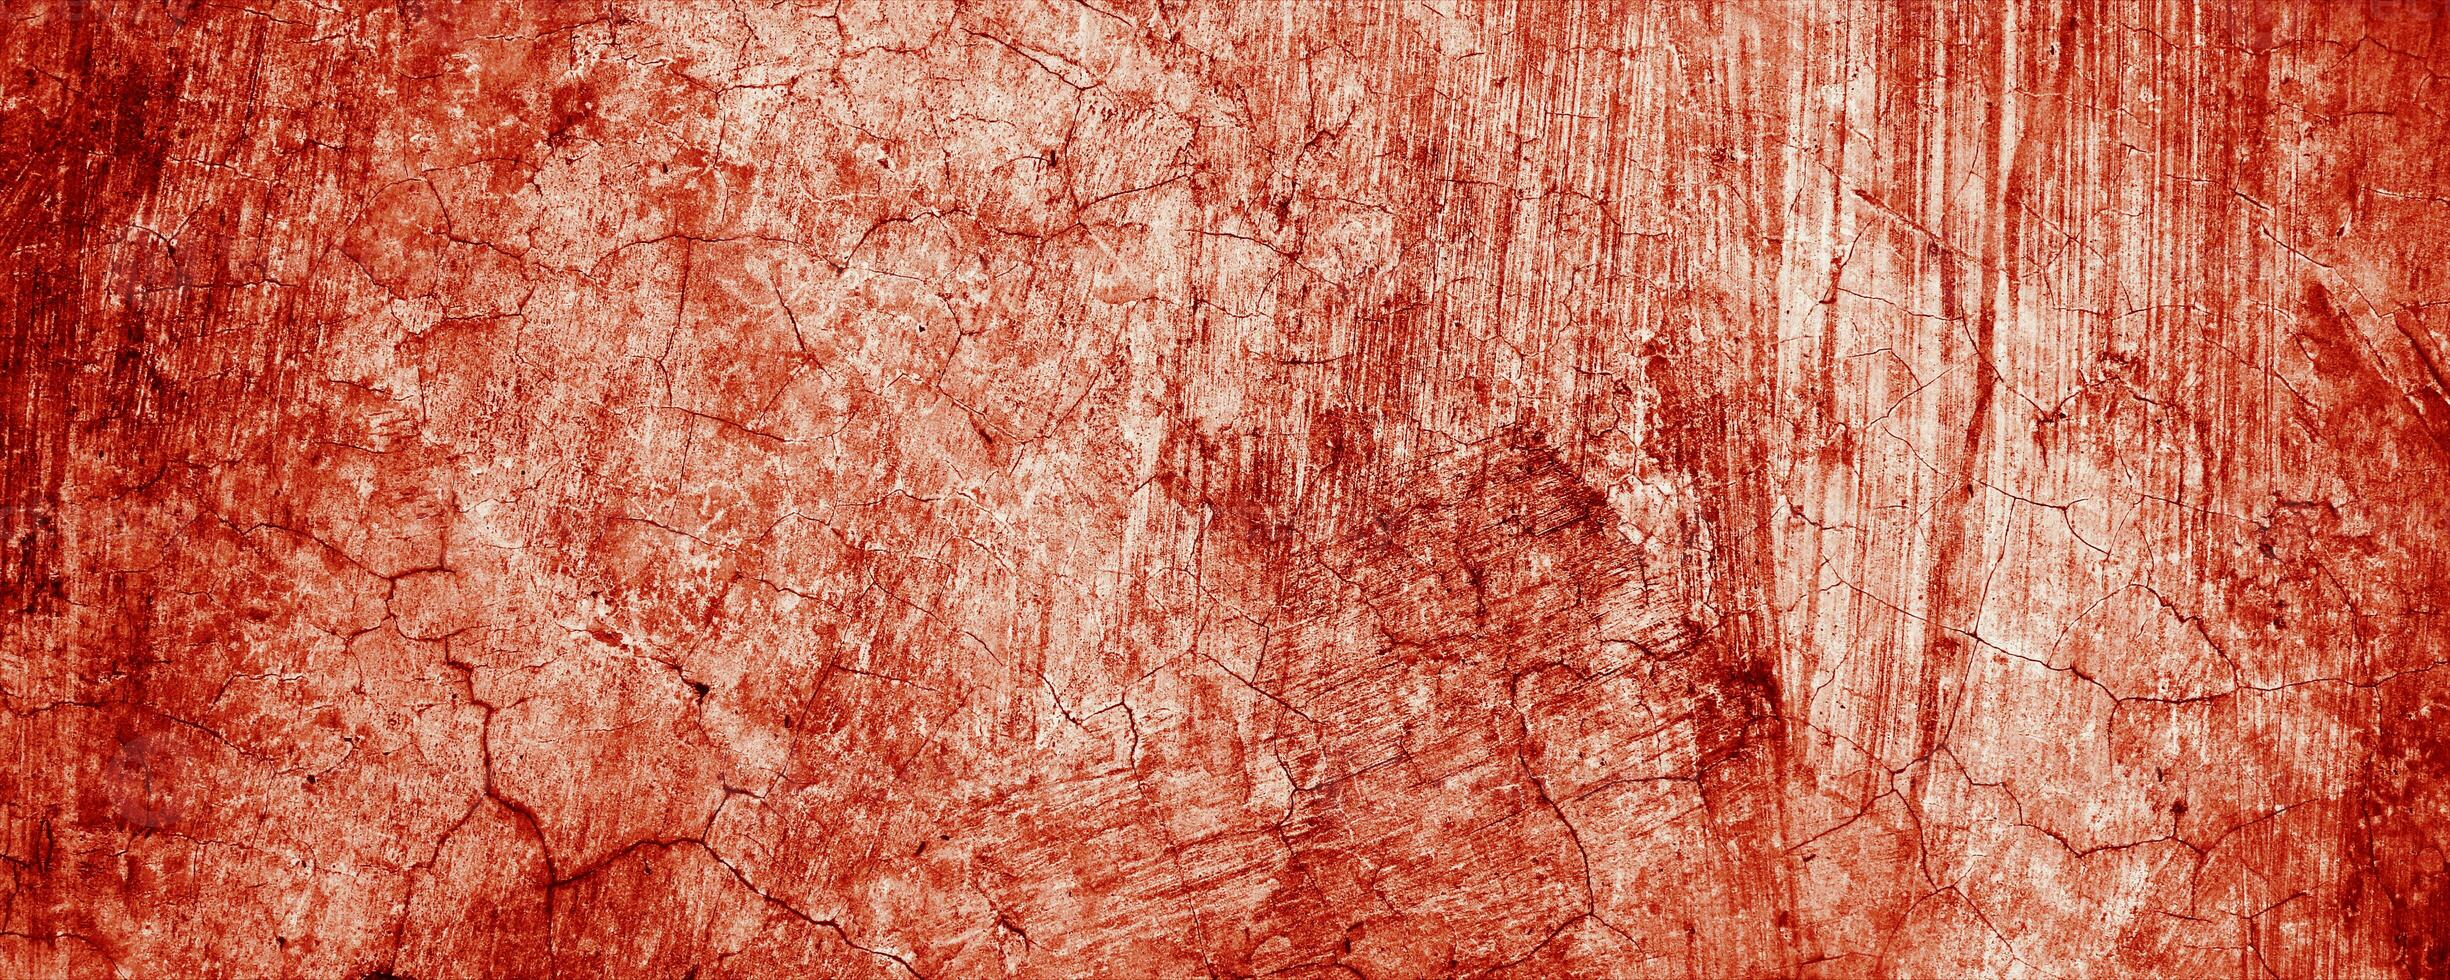 stänker av röd måla likna färsk blod, deras ojämn kanter bidrar till en känsla av oro. de fläckar, påminner av halloween fasor. foto